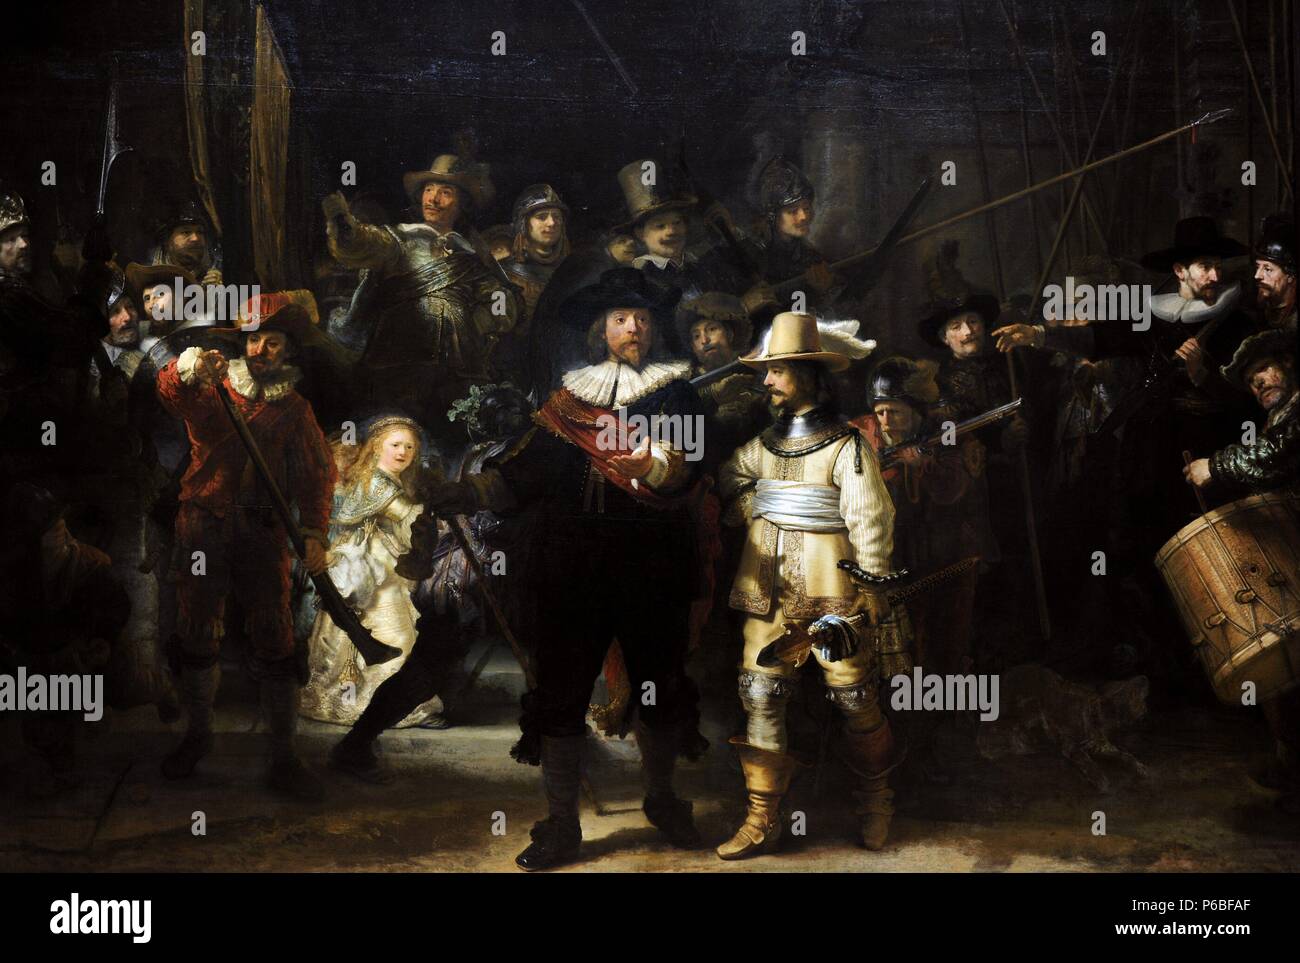 Rembrandt Harmenszoon van Rijn (1606-1669). Niederländischer Maler. Die Nachtwache, 1662. Rijksmuseum. Amsterdam. Holland. Stockfoto